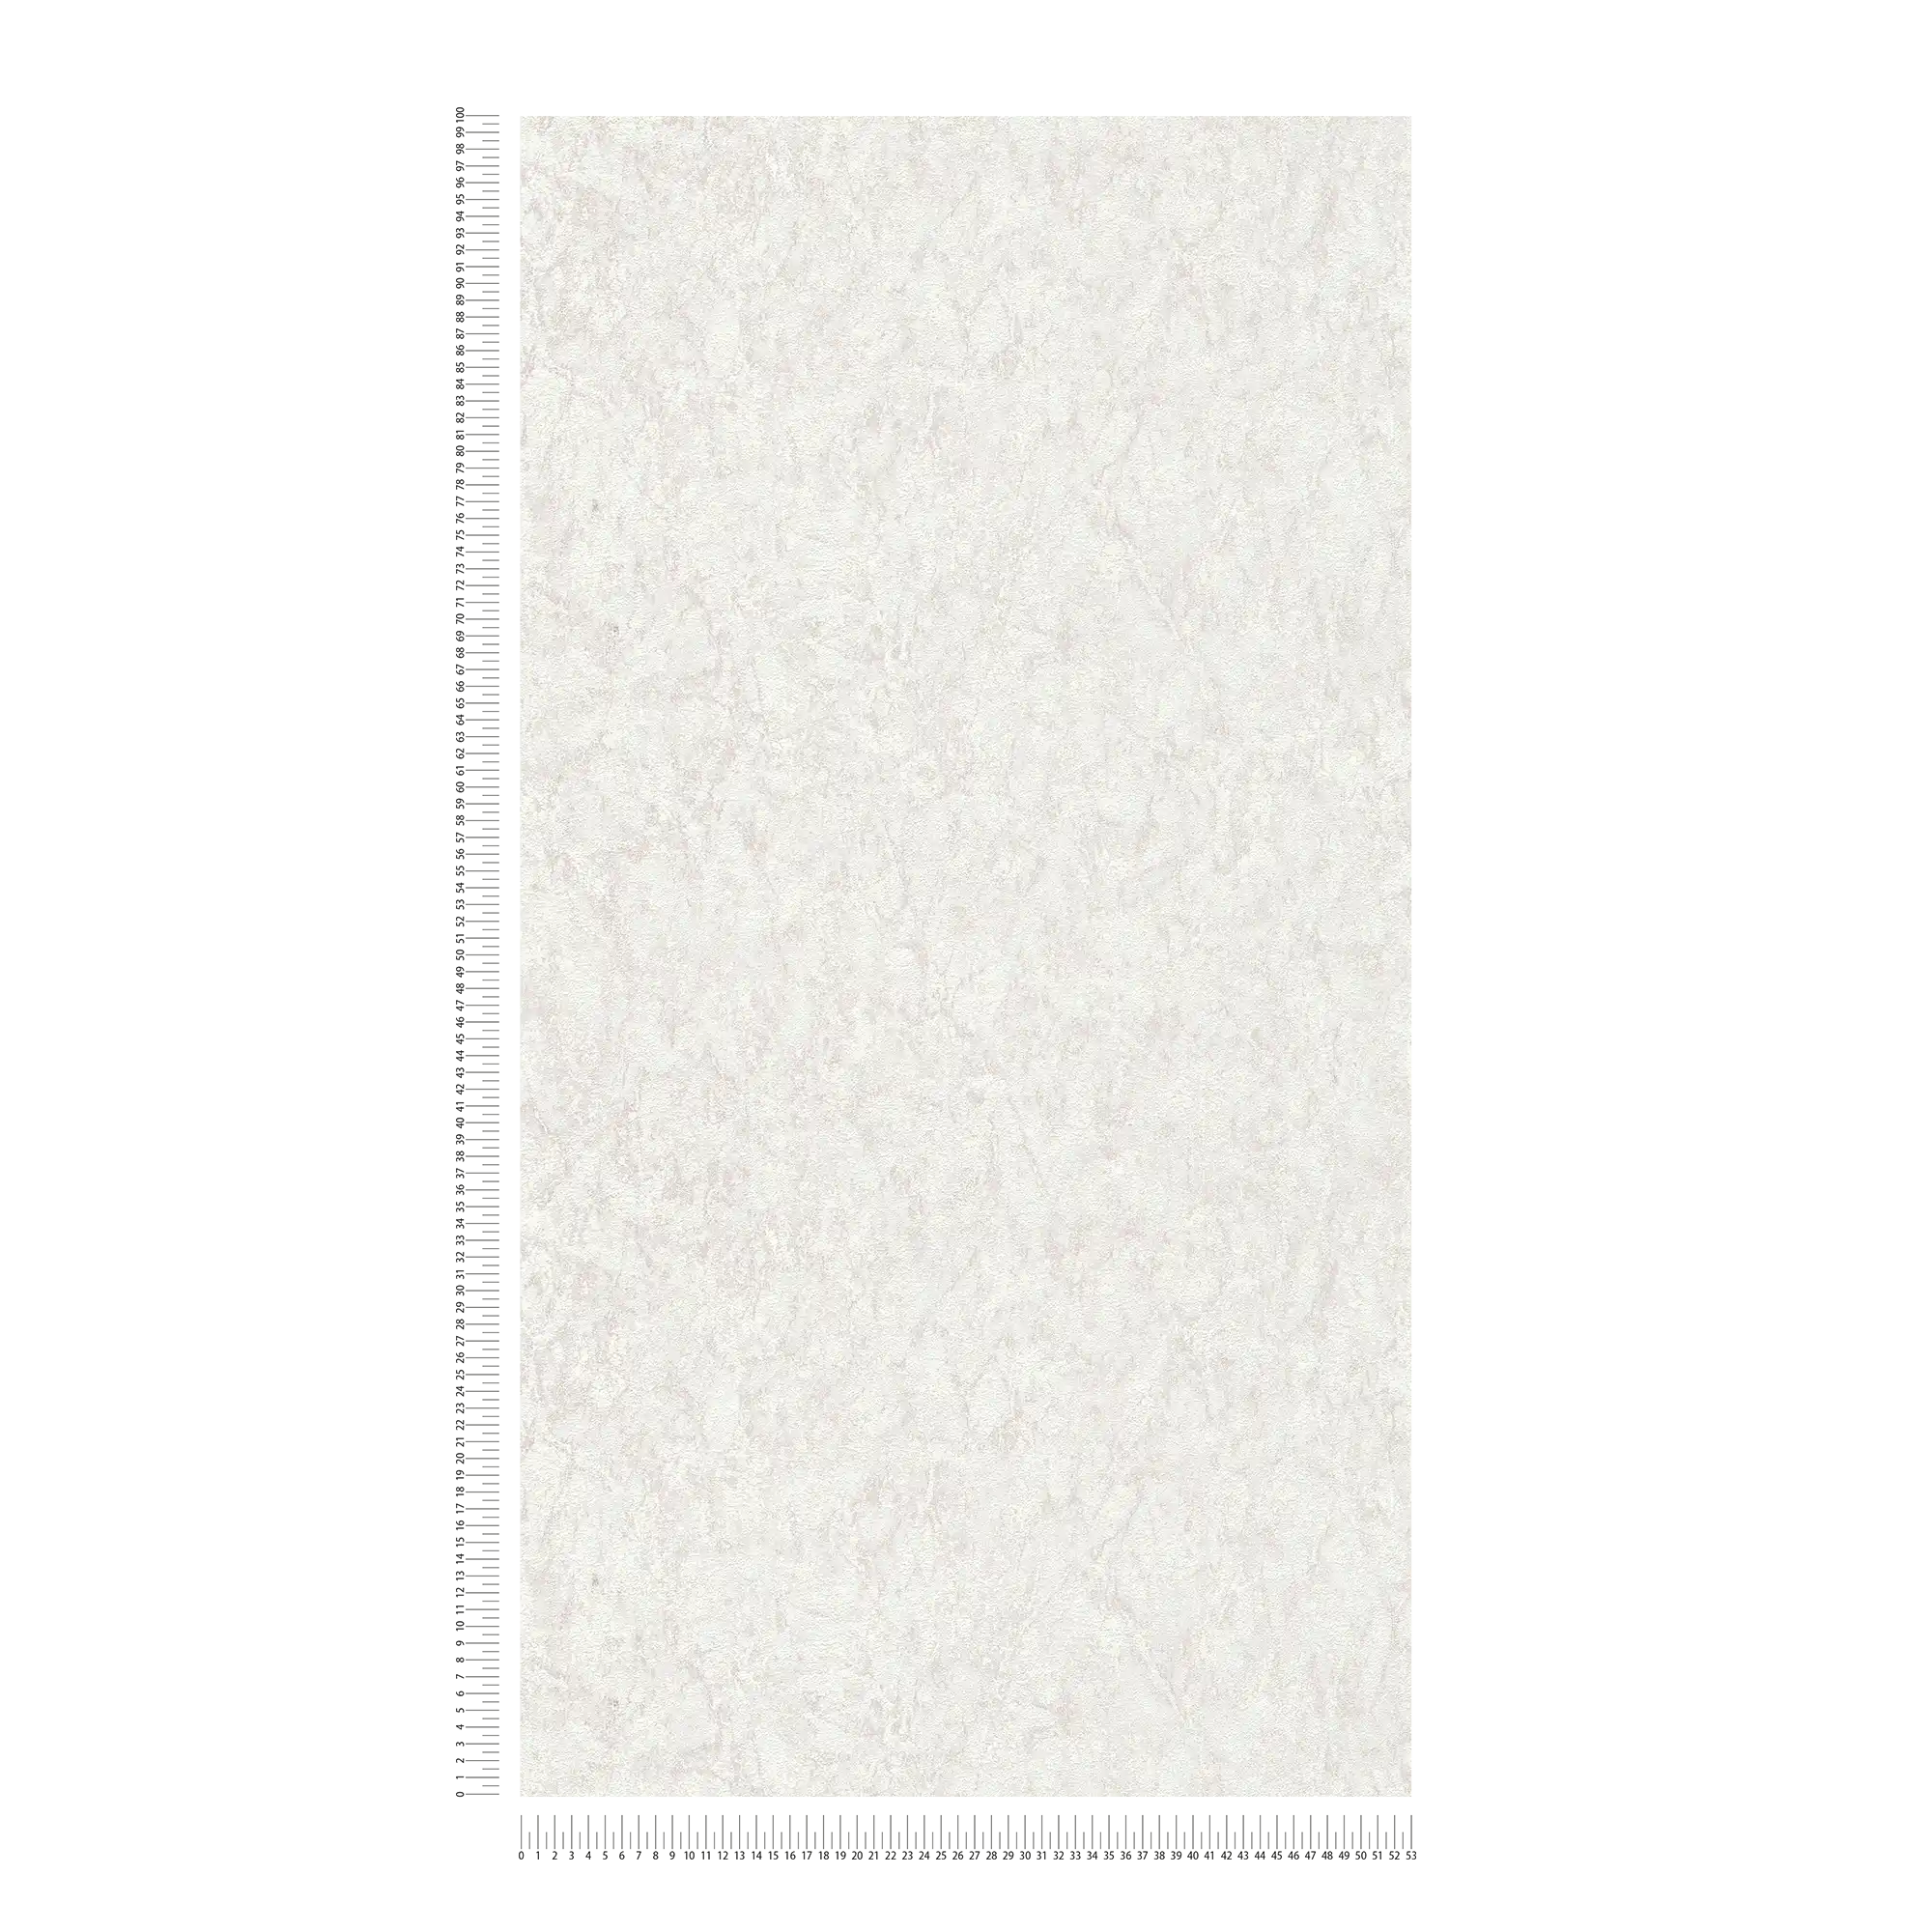             Carta da parati unitaria con effetto strutturato e disegno screziato - grigio, beige, crema
        